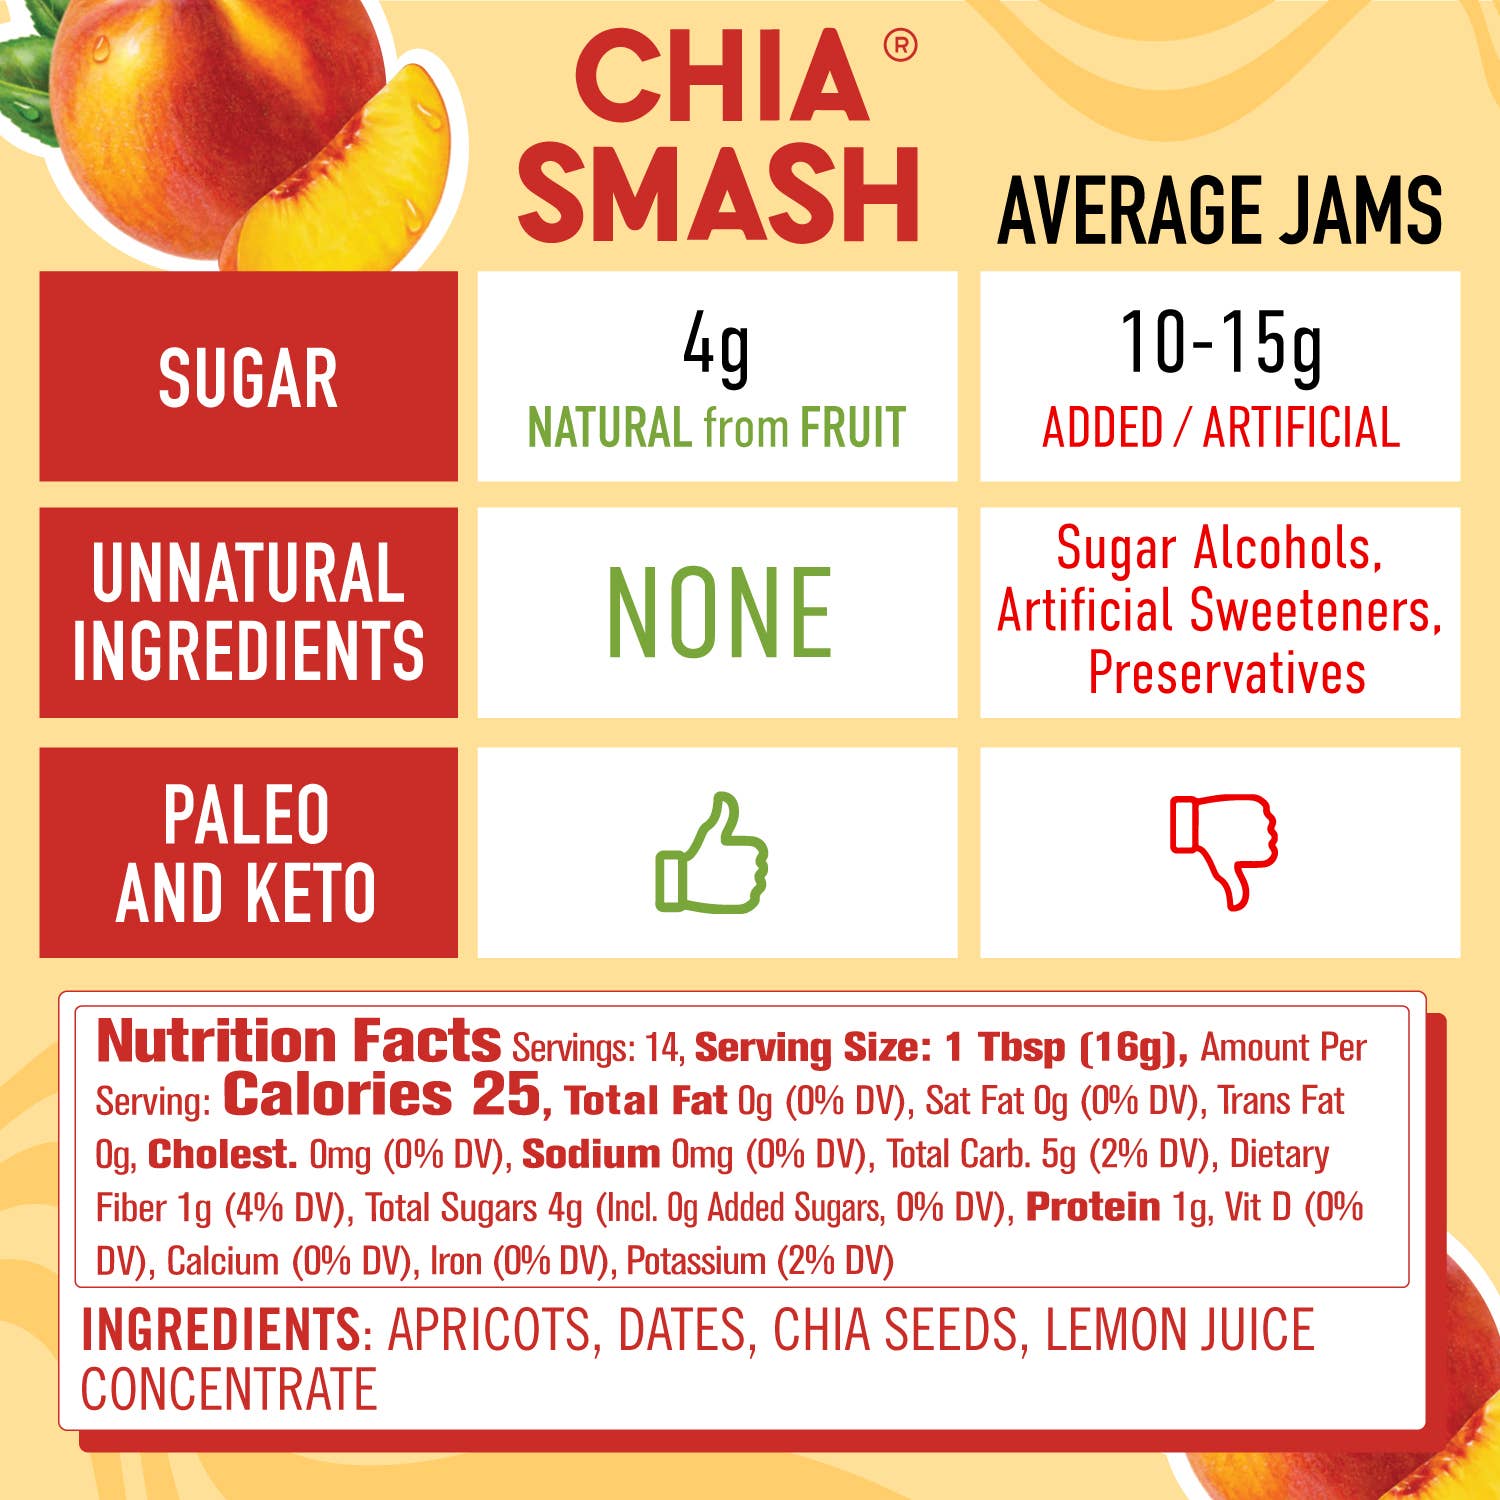 Apricot Chia Smash - Superfood Jam - 8 OZ